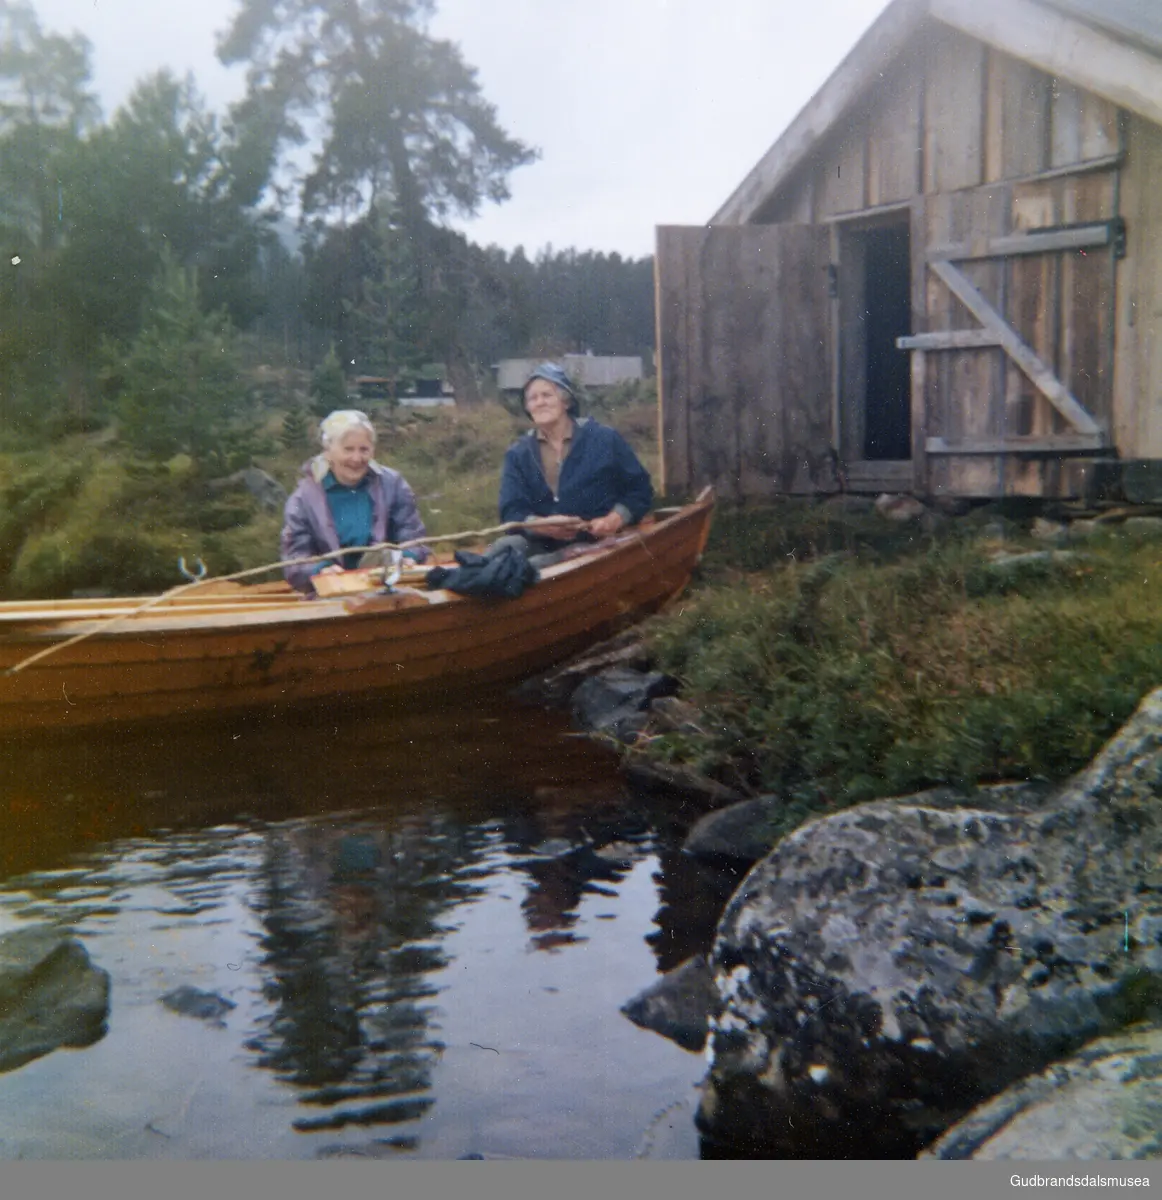 Marie Dahl og Kari Snerle i båten ved naustet, Flatningen?
Eier Pål Arne Snerle. Vågå.